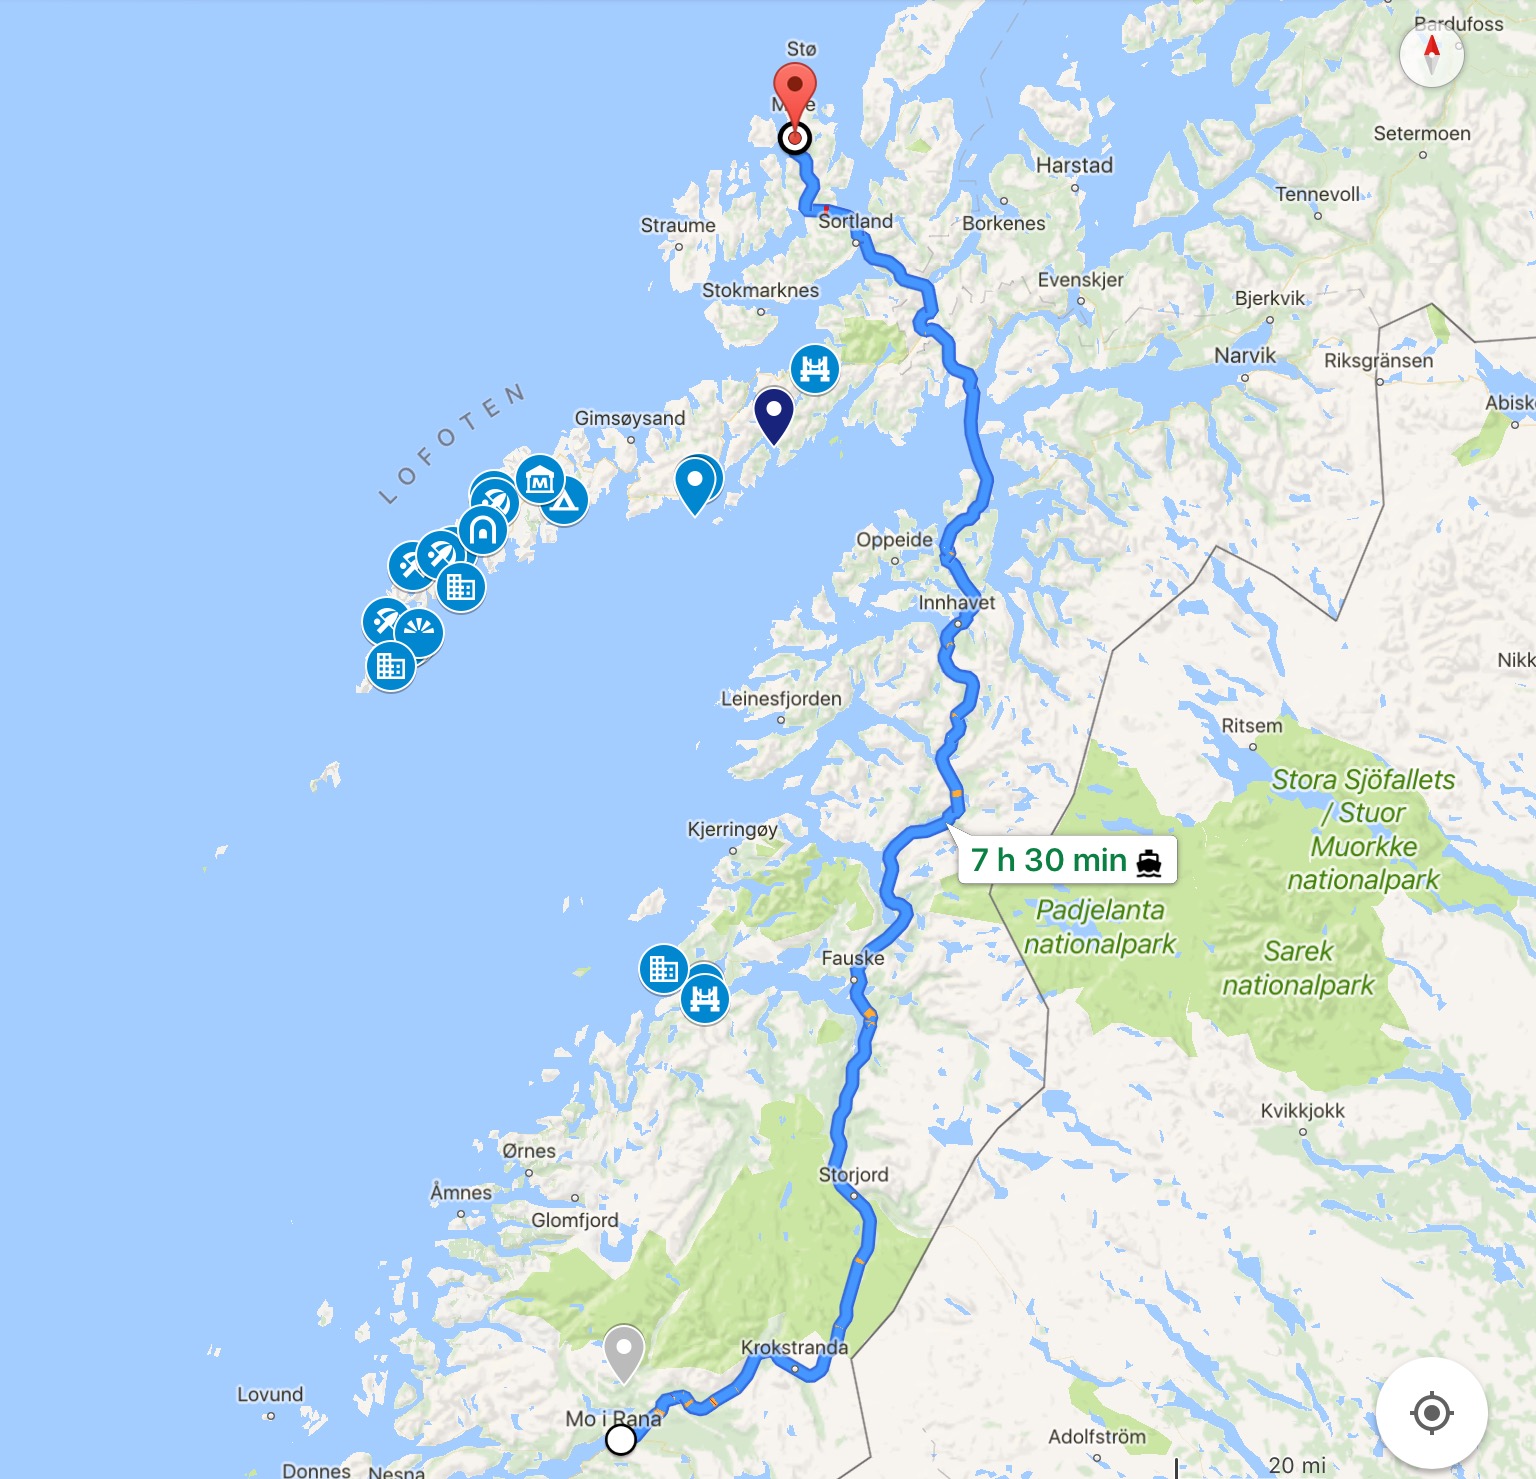 Route vom 23.08.2017 von Mo i Rana nach Myre auf den Vesterålen